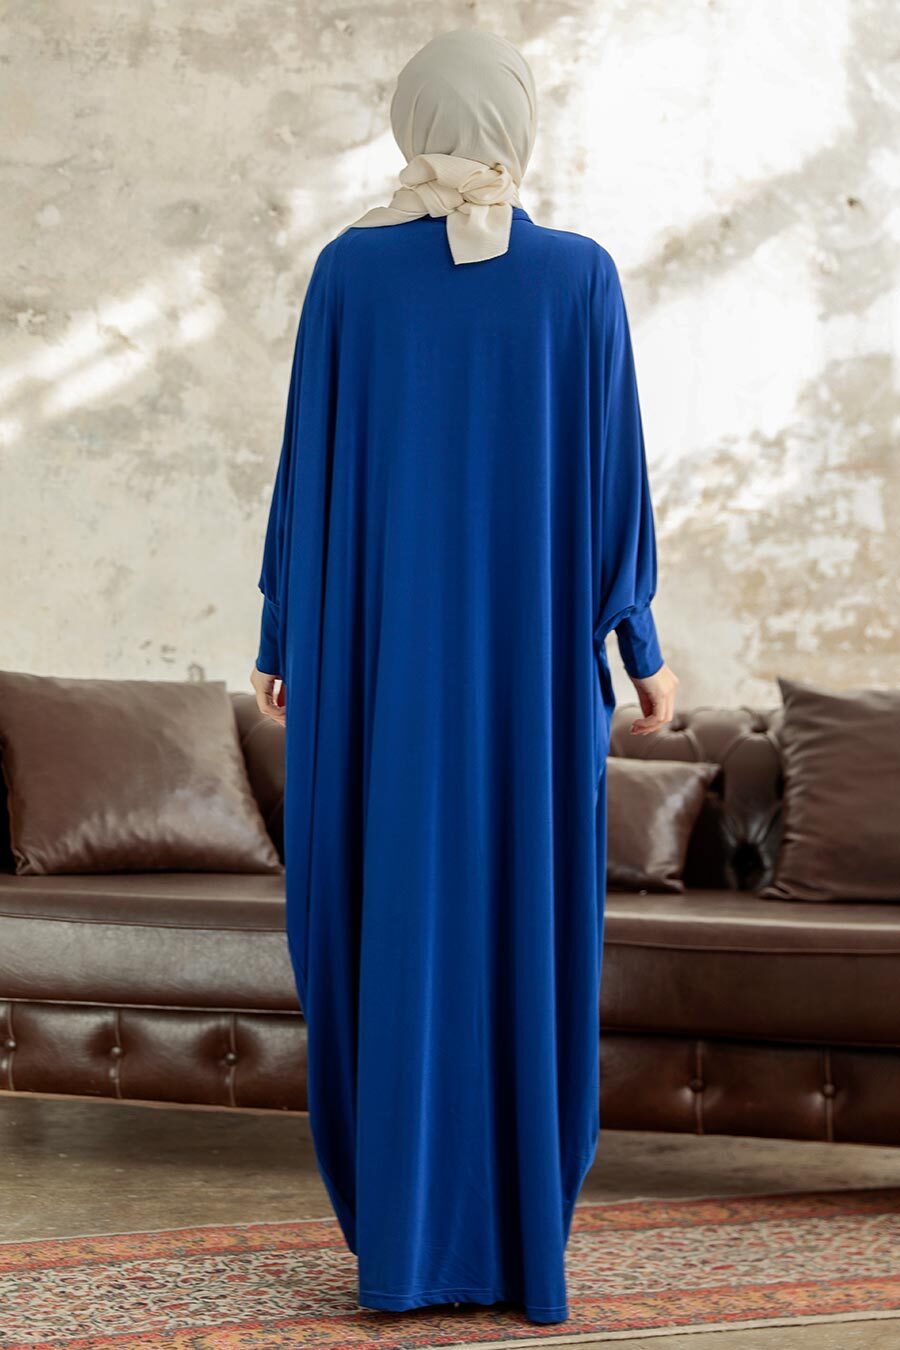 Neva Style - Sax Blue Islamic Clothing Turkish Abaya 17410SX